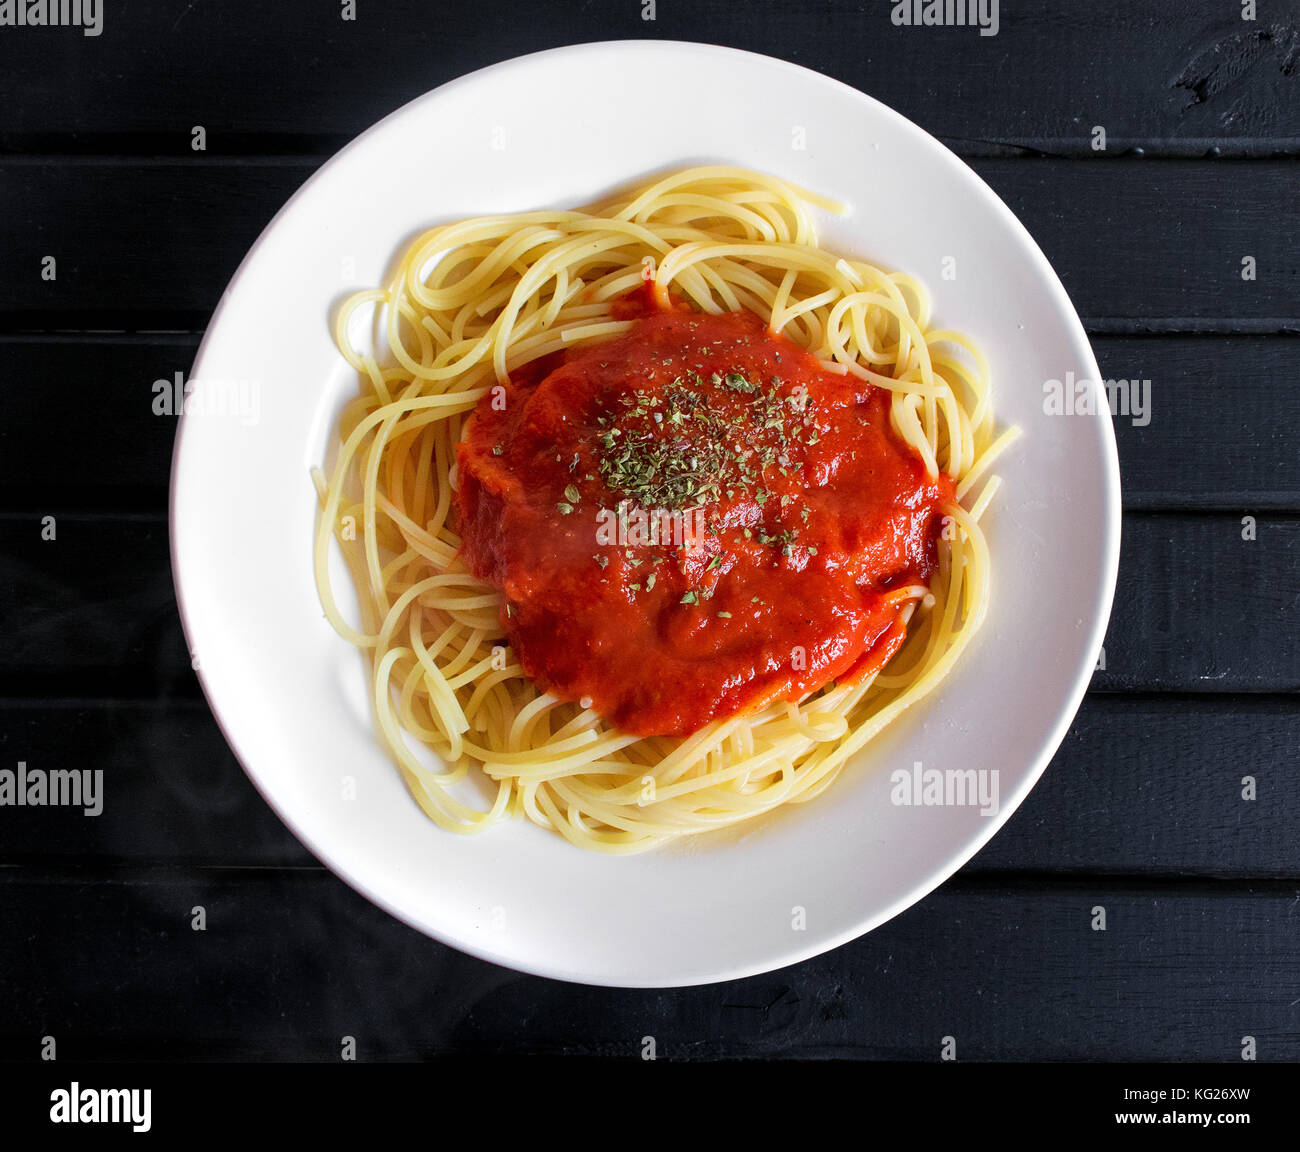 Cuocere gli spaghetti piatto caldo con il vapore che fuoriesce, con salsa di pomodoro rosso e origano spruzzato sulla parte superiore, su di un legno nero lo sfondo della tabella Foto Stock